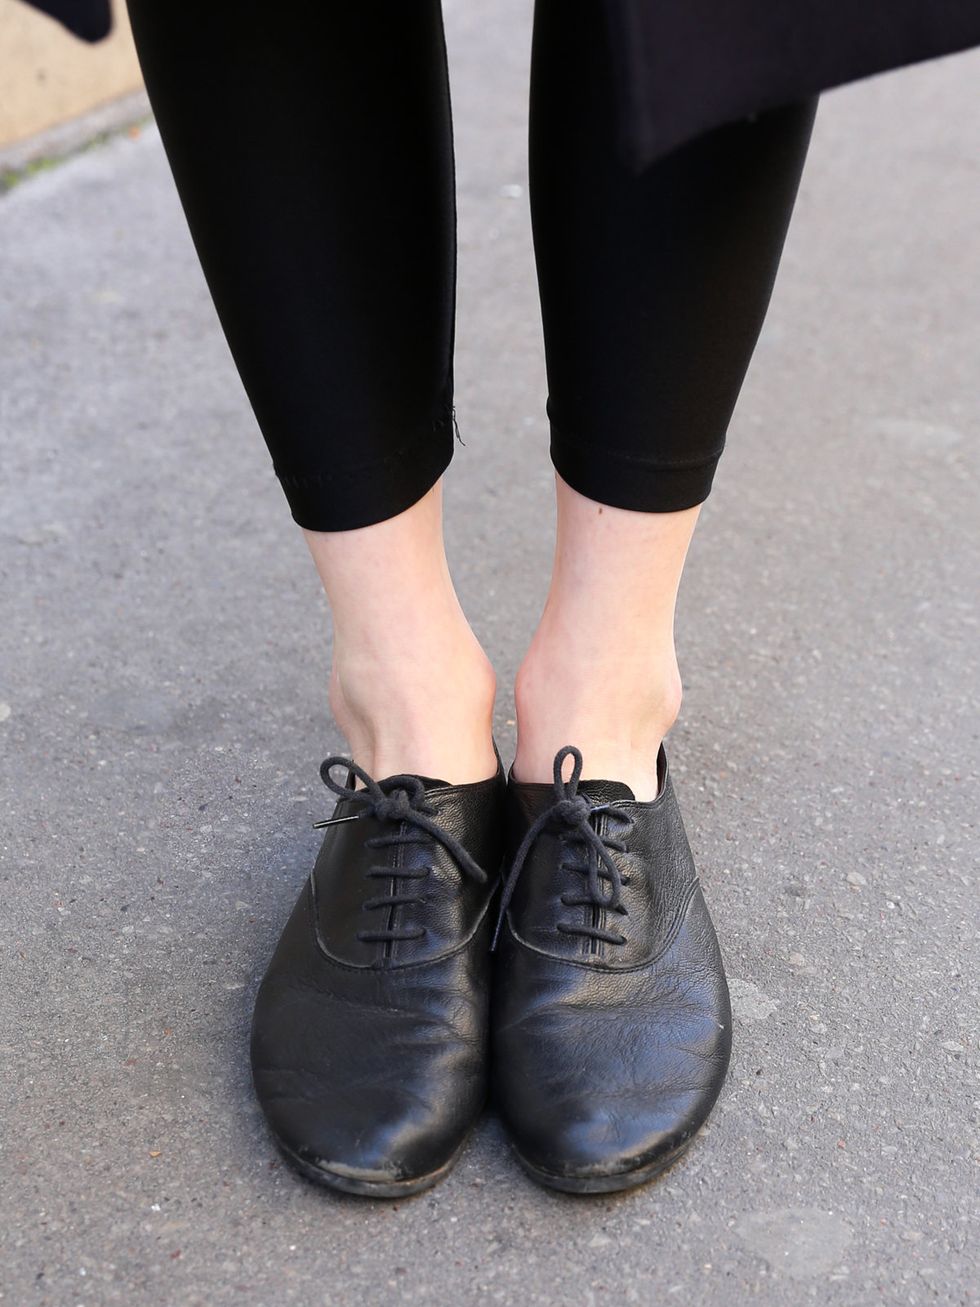 Footwear, Shoe, Black, Street fashion, Ankle, Human leg, Oxford shoe, Fashion, Leg, Leather, 